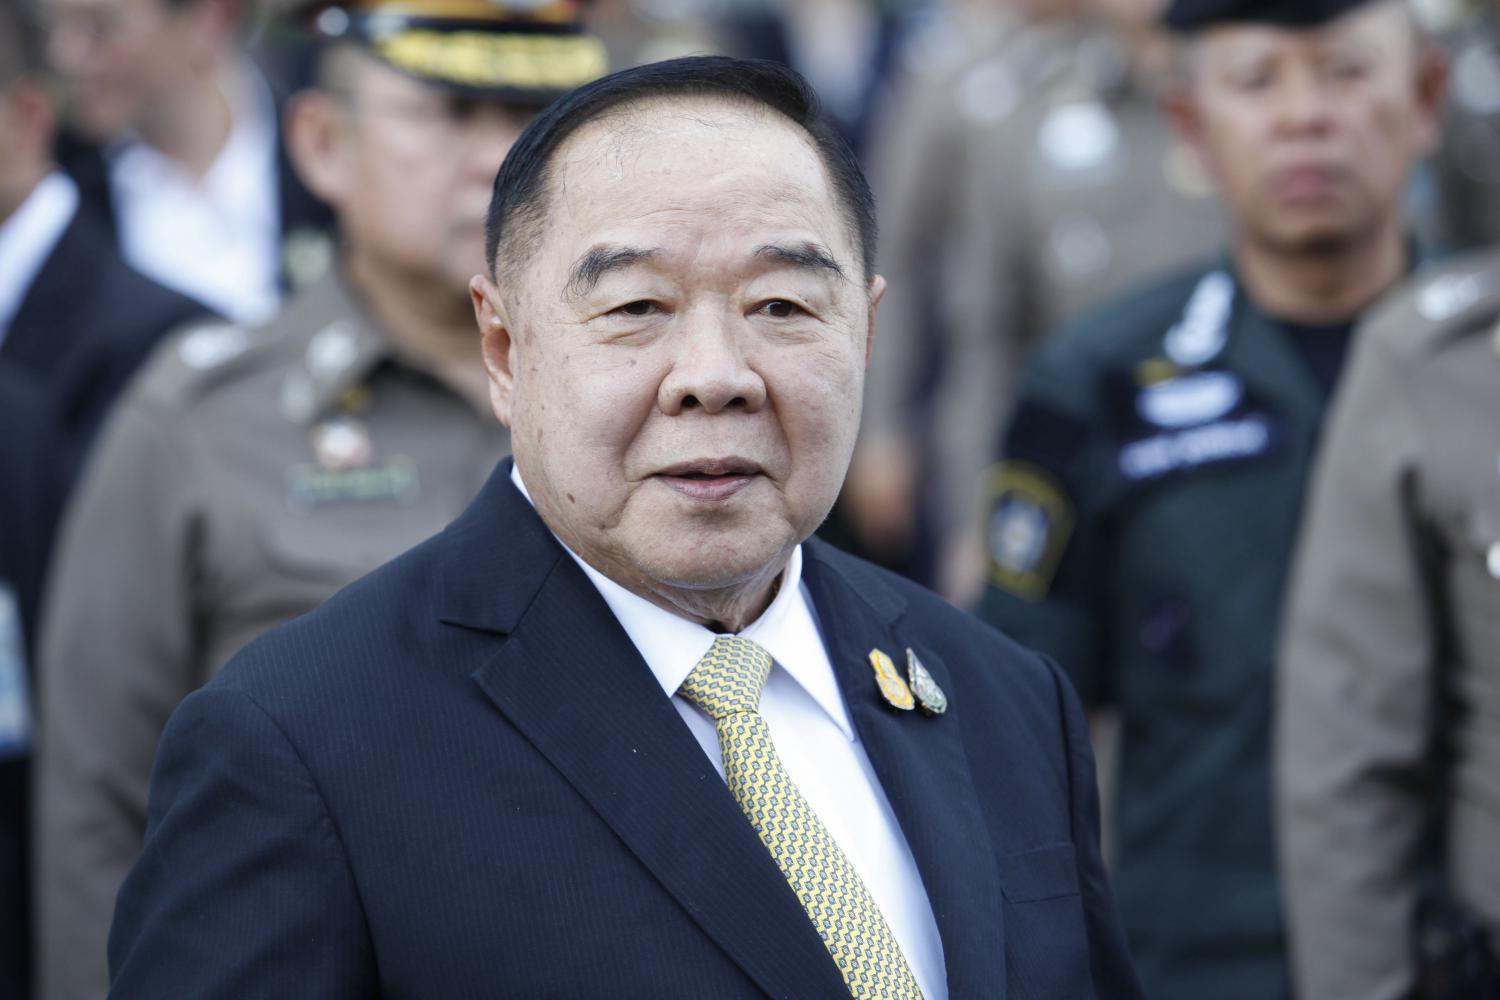 ทำเนียบรัฐบาล พล.อ.ประวิตร เริ่มปฏิบัติหน้าที่ "นายกรัฐมนตรี" ในนามของประเทศไทย